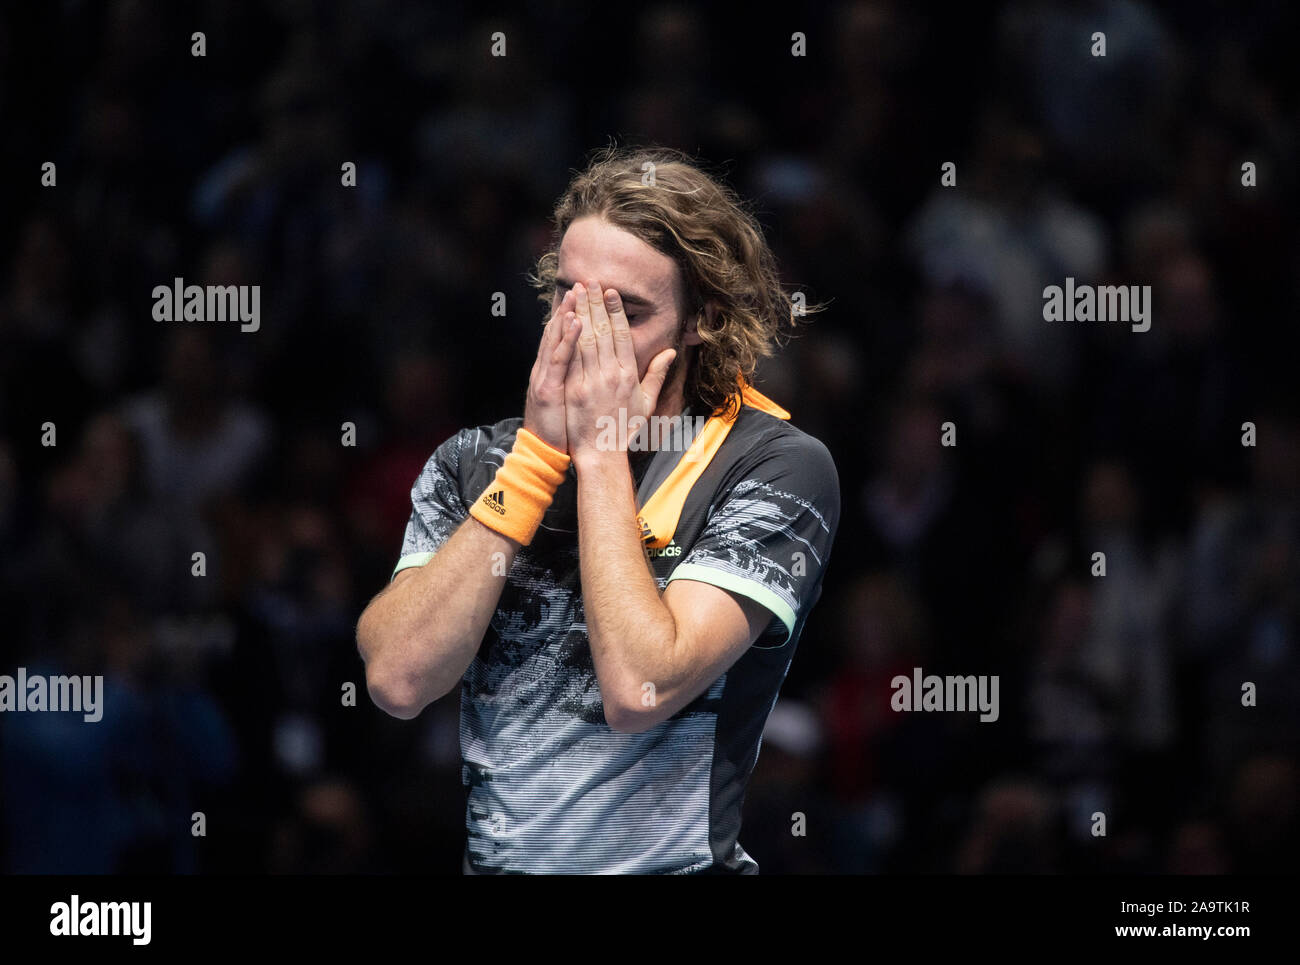 O2, Londres, Royaume-Uni. 17 novembre 2019. Un Tsitsipas émotionnel Stefanos remporte la finale de l'ATP 2019 Nitto, battant Dominic Thiem. Credit : Malcolm Park/Alamy Live News. Banque D'Images